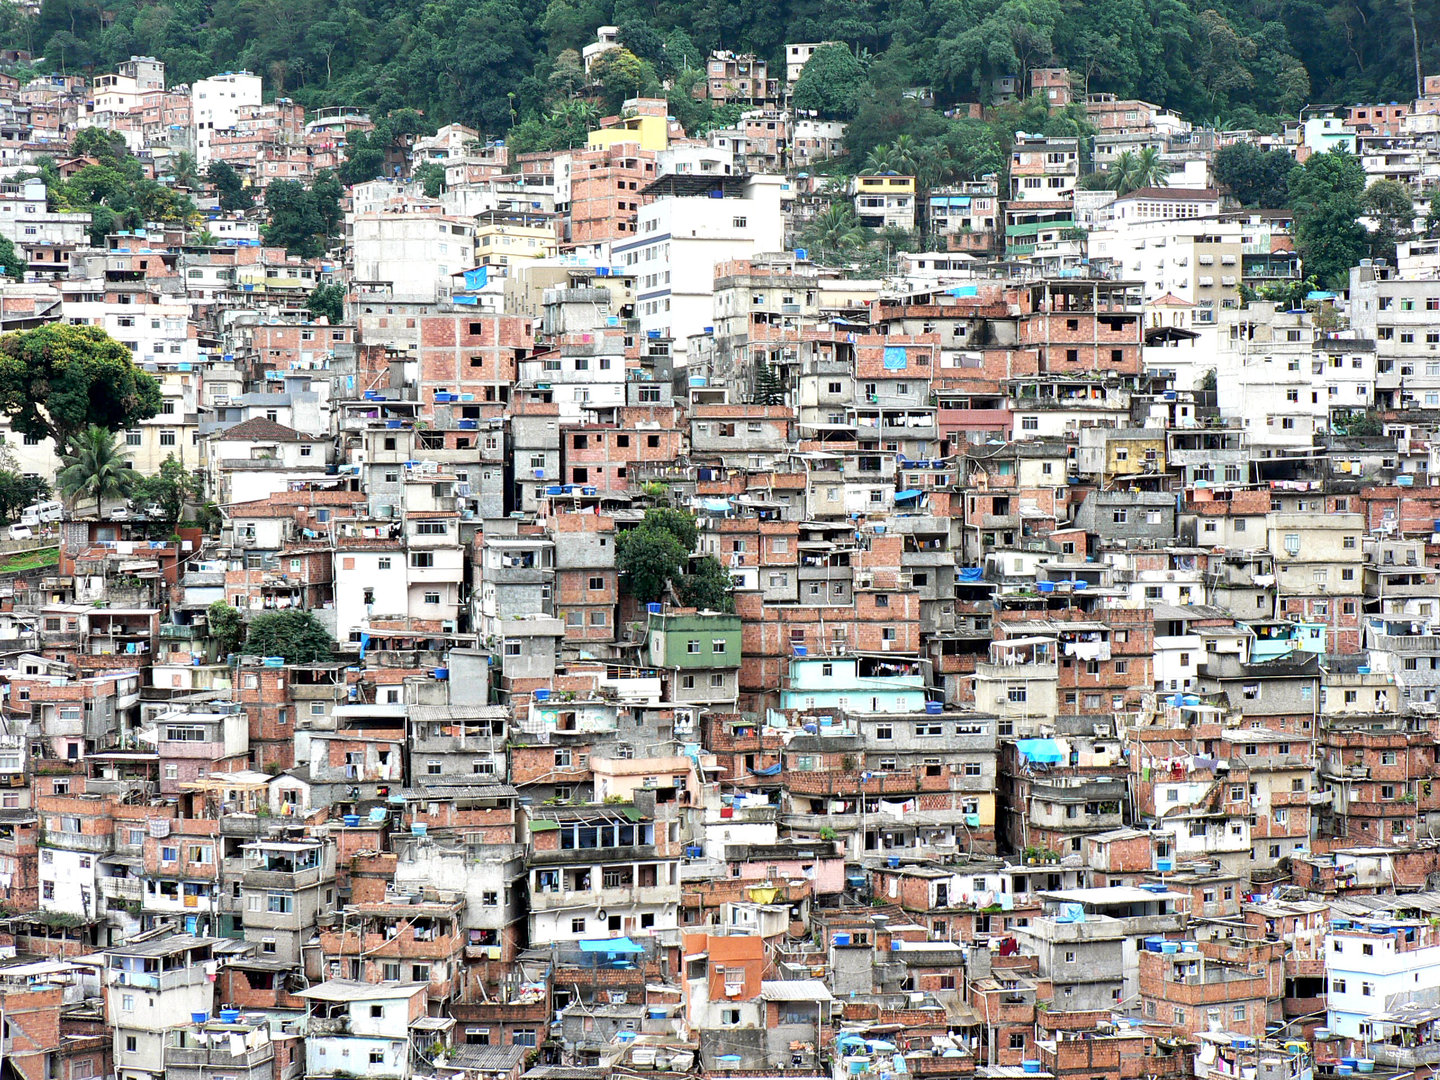 Overpopulated slum